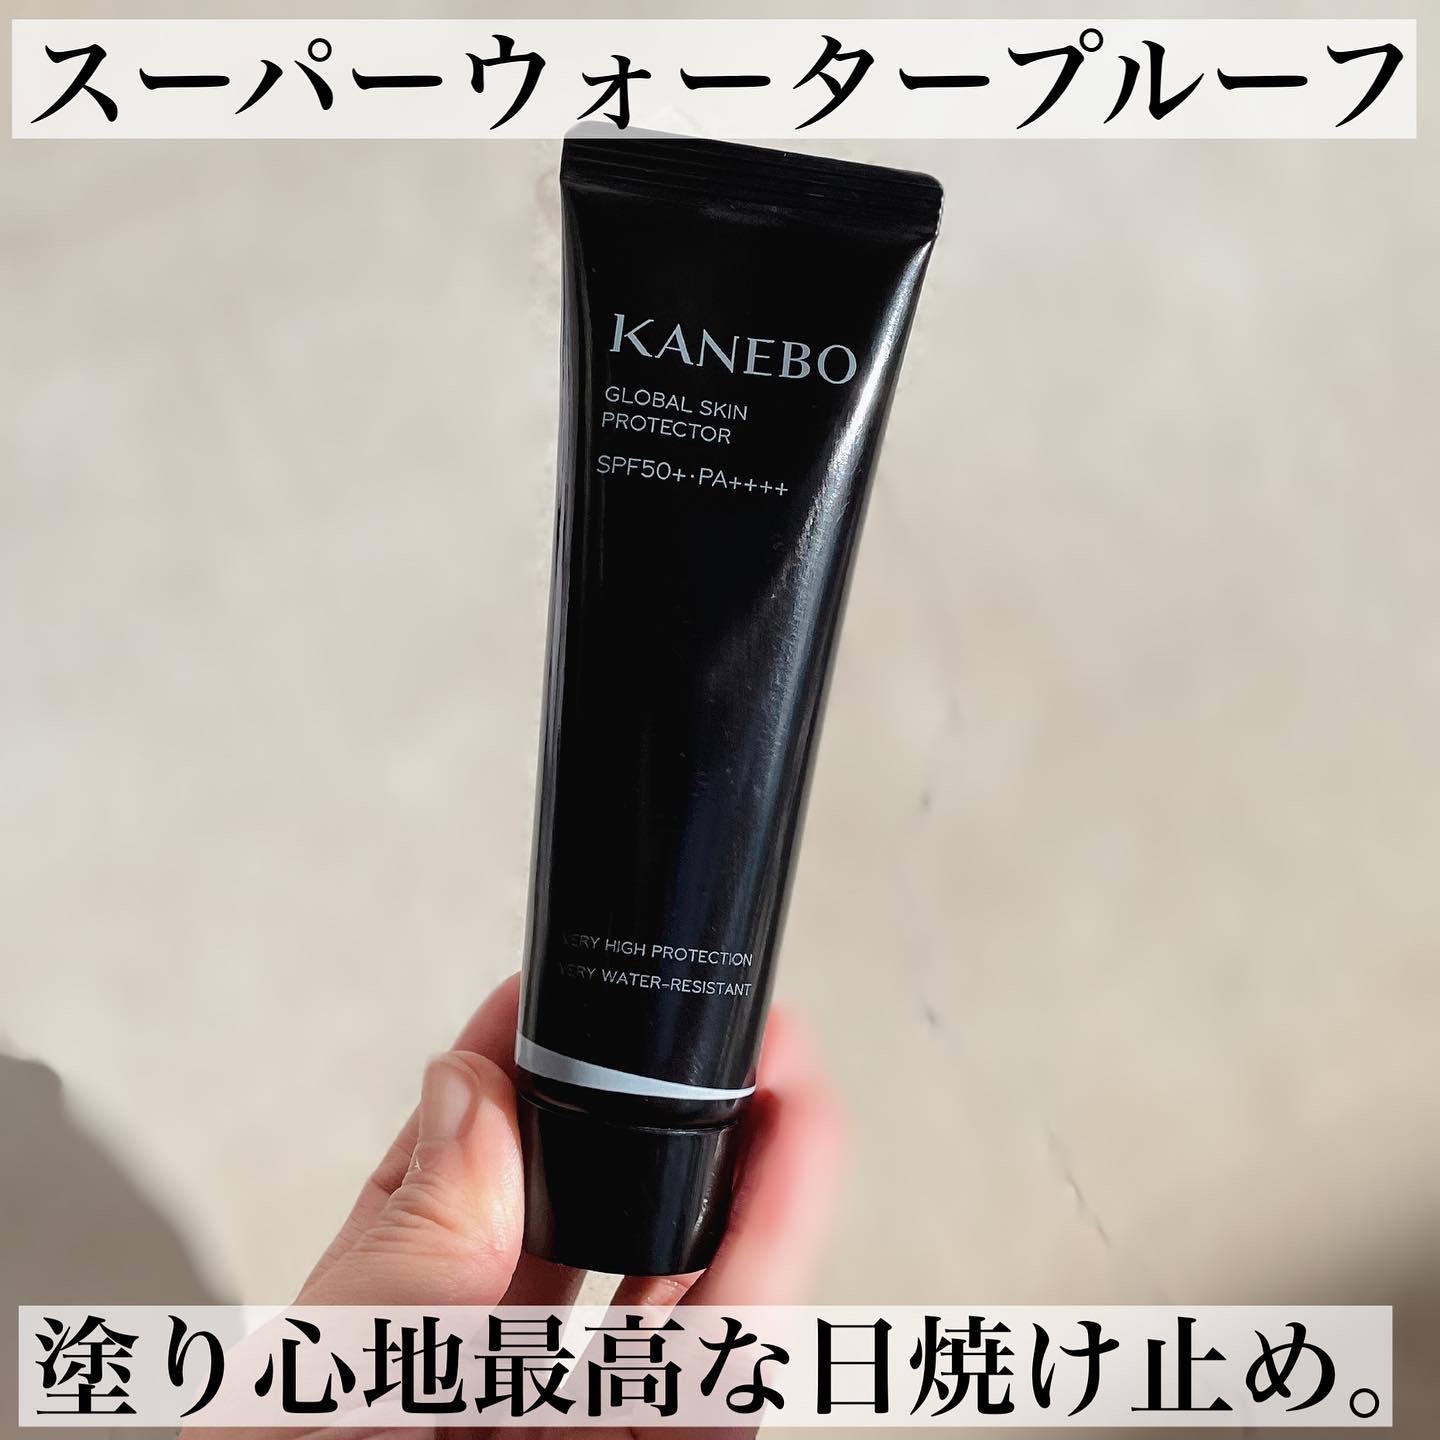 KANEBO(カネボウ) グローバル スキン プロテクターの良い点・メリットに関するなゆさんの口コミ画像1